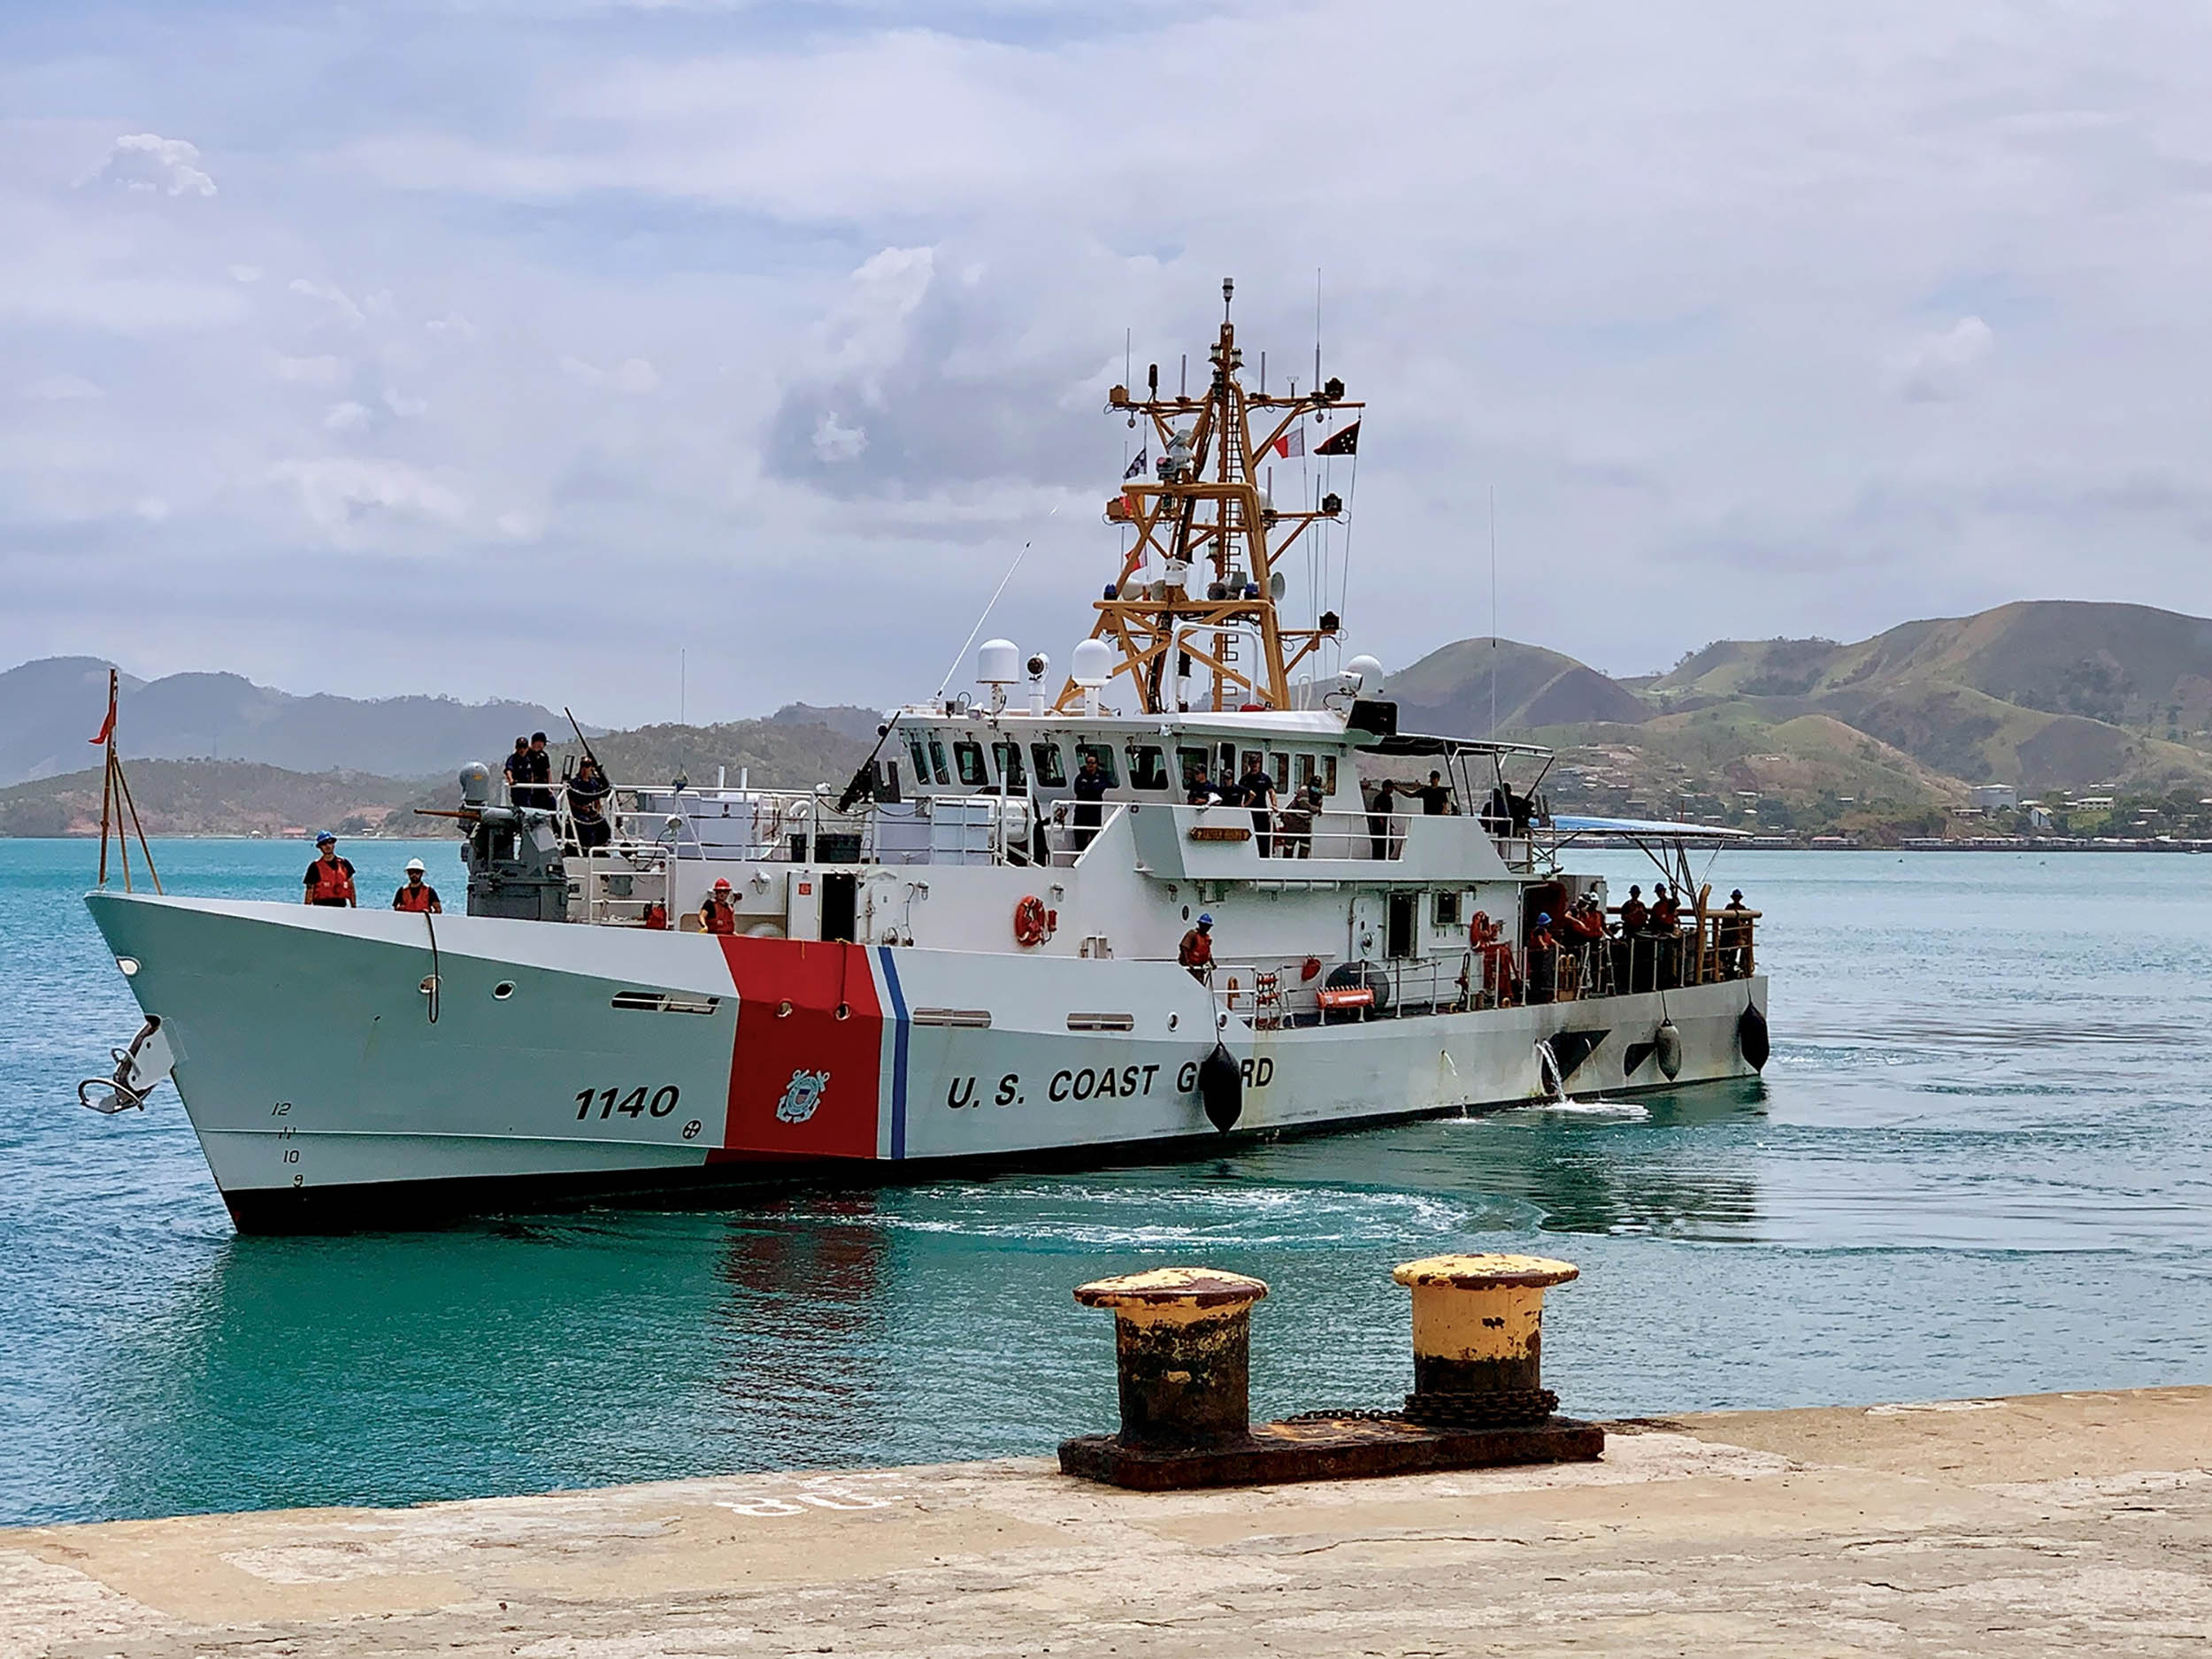 USCGC Oliver Henry crew arrives in Port Moresby for port visit